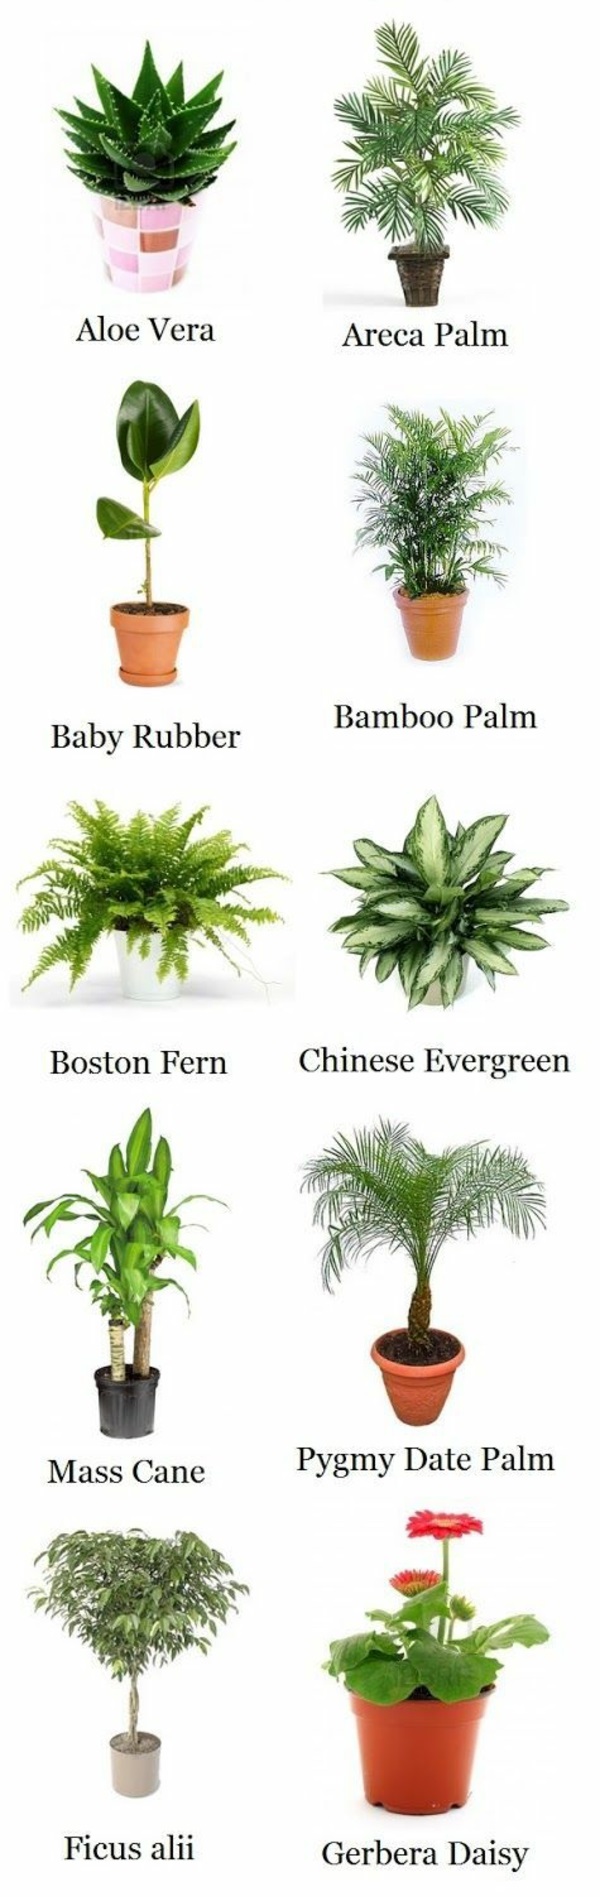 plantas de interior fáciles de cuidar palmeras árboles plantas de interior